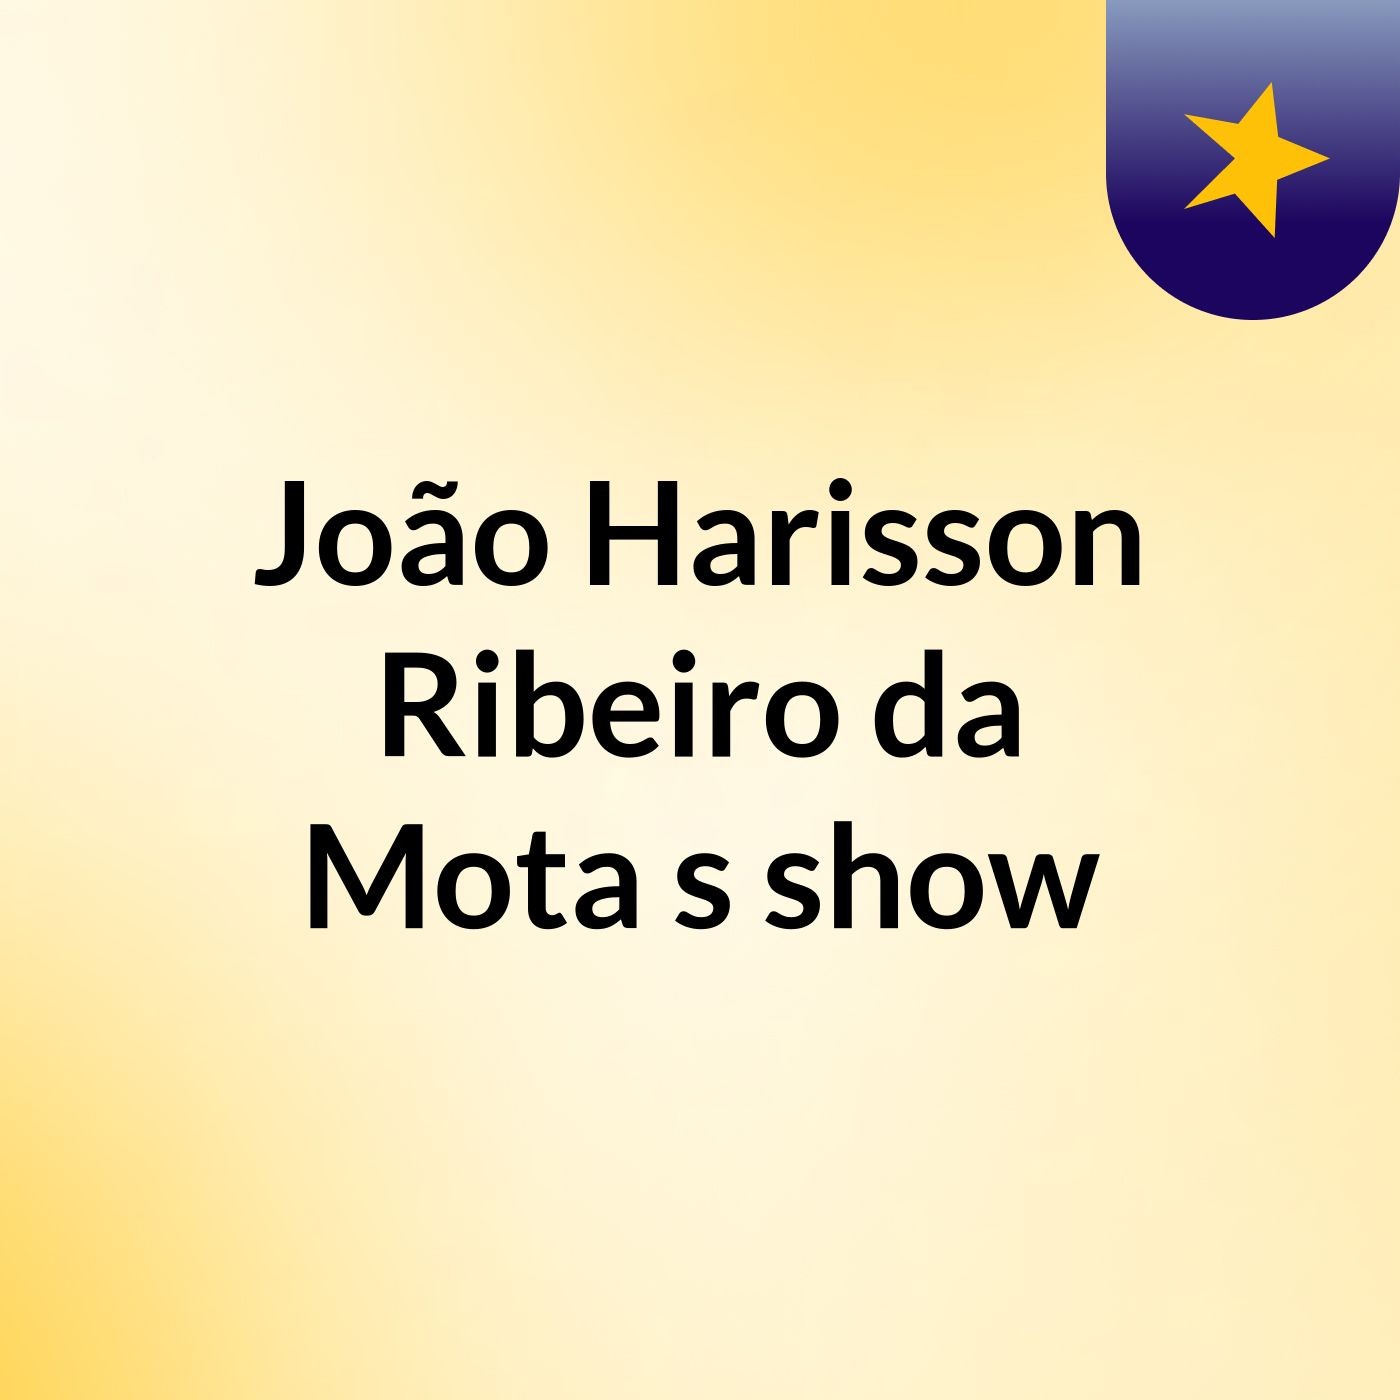 João Harisson Ribeiro da Mota's show